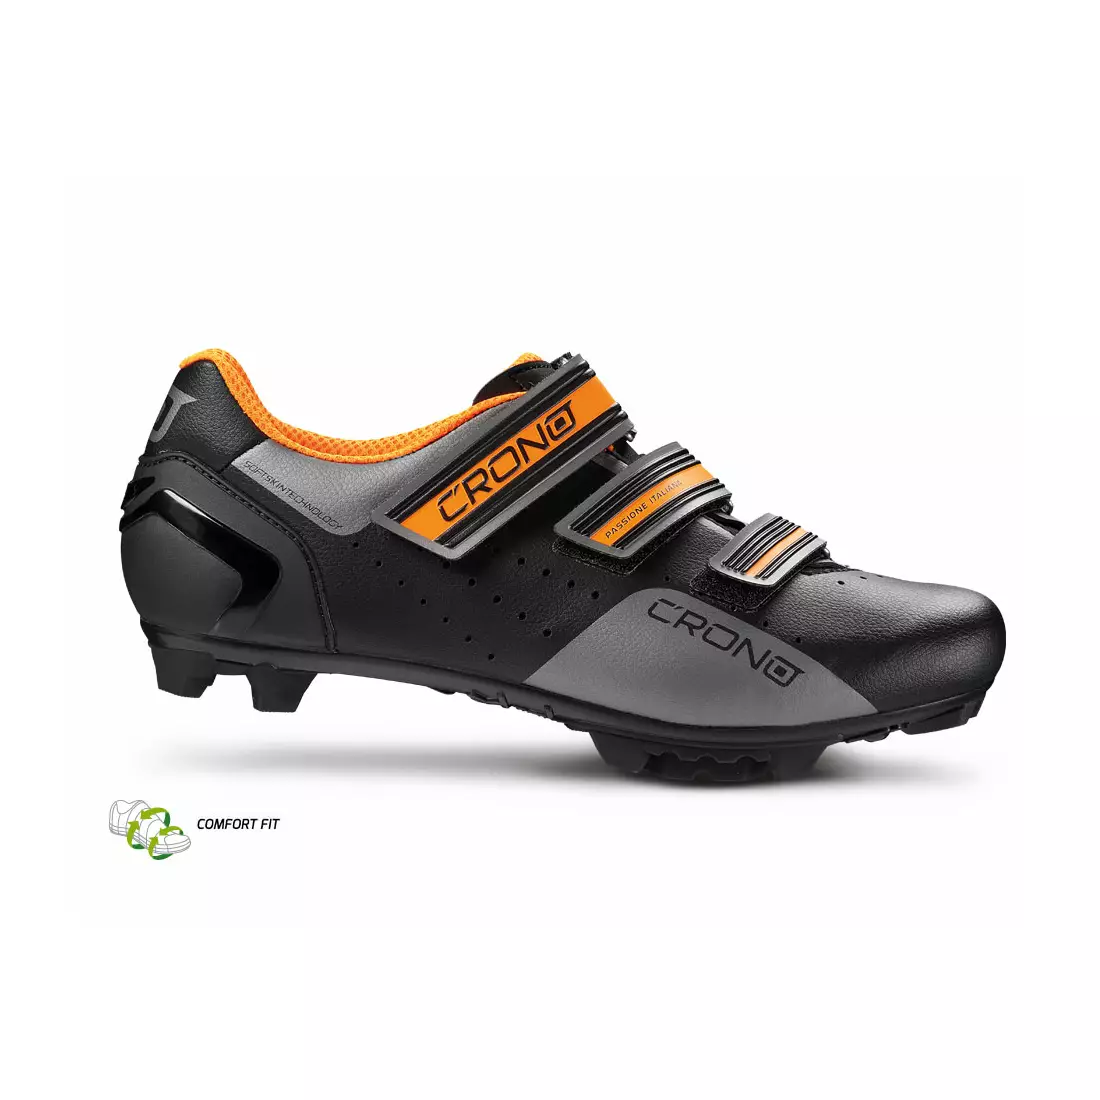 CRONO CX-4 NYLON MTB kerékpáros cipő fekete-narancs